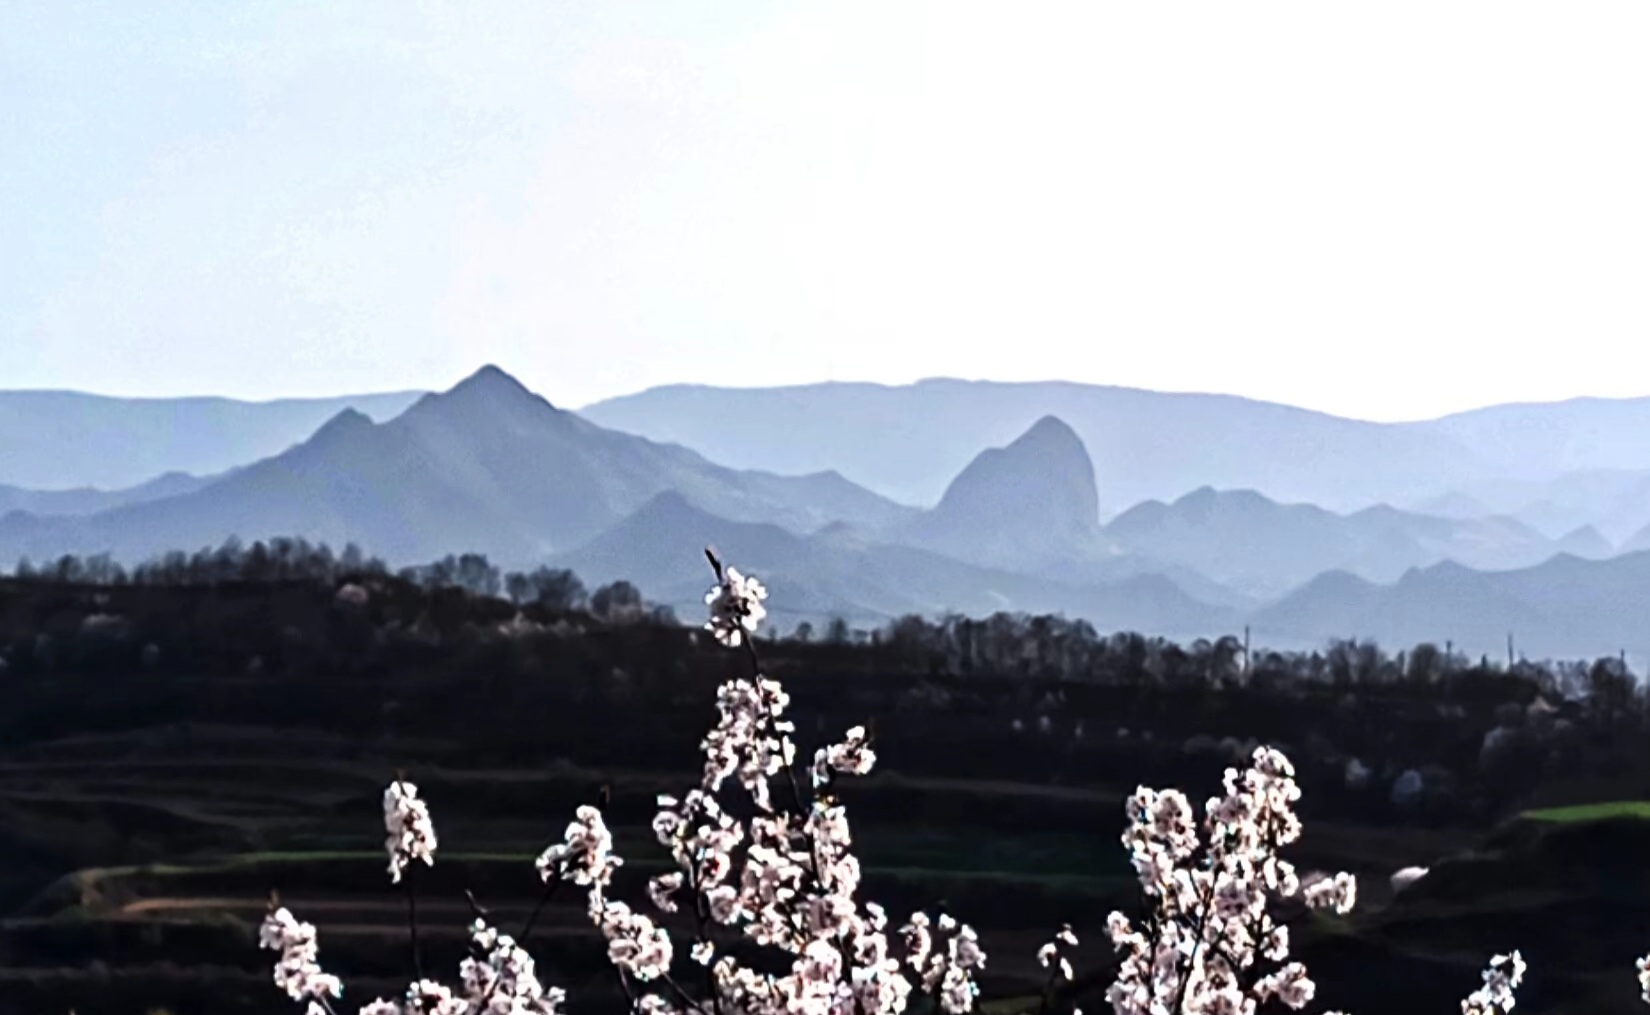 #让人心动的乡间美景 #春天玩点花的#春日赏花图鉴 美丽的武山